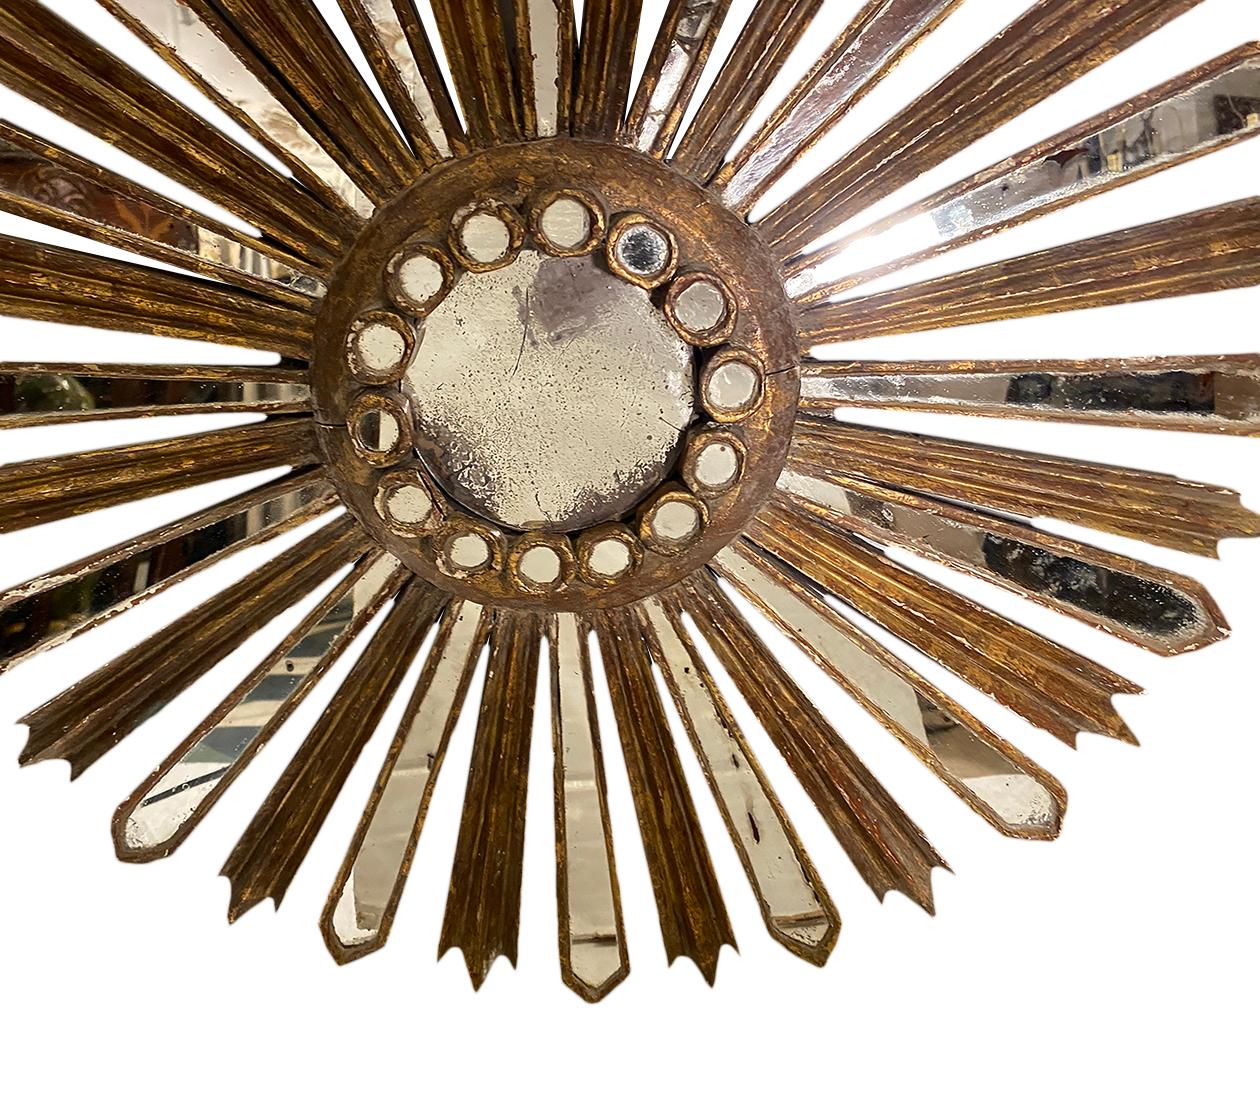 Miroir en bois doré espagnol des années 1920.

Mesures :
Diamètre : 21